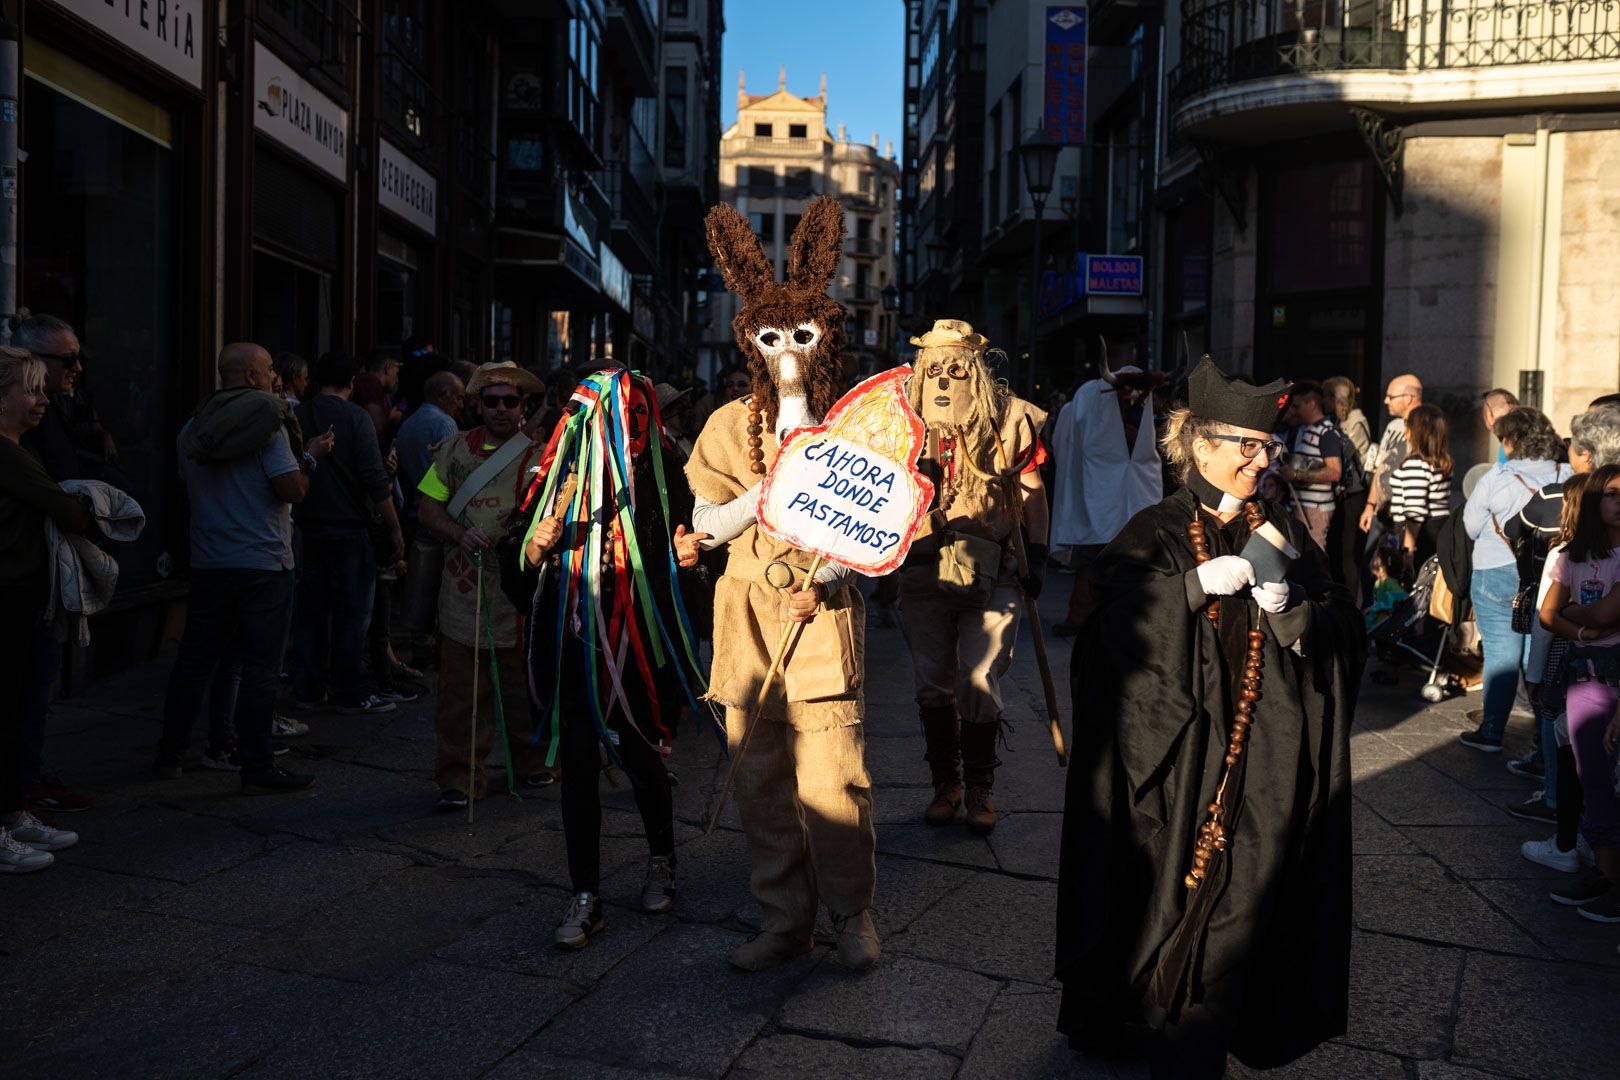 GALERÍA | Las mascaradas llenan de color y alegría el centro de Zamora